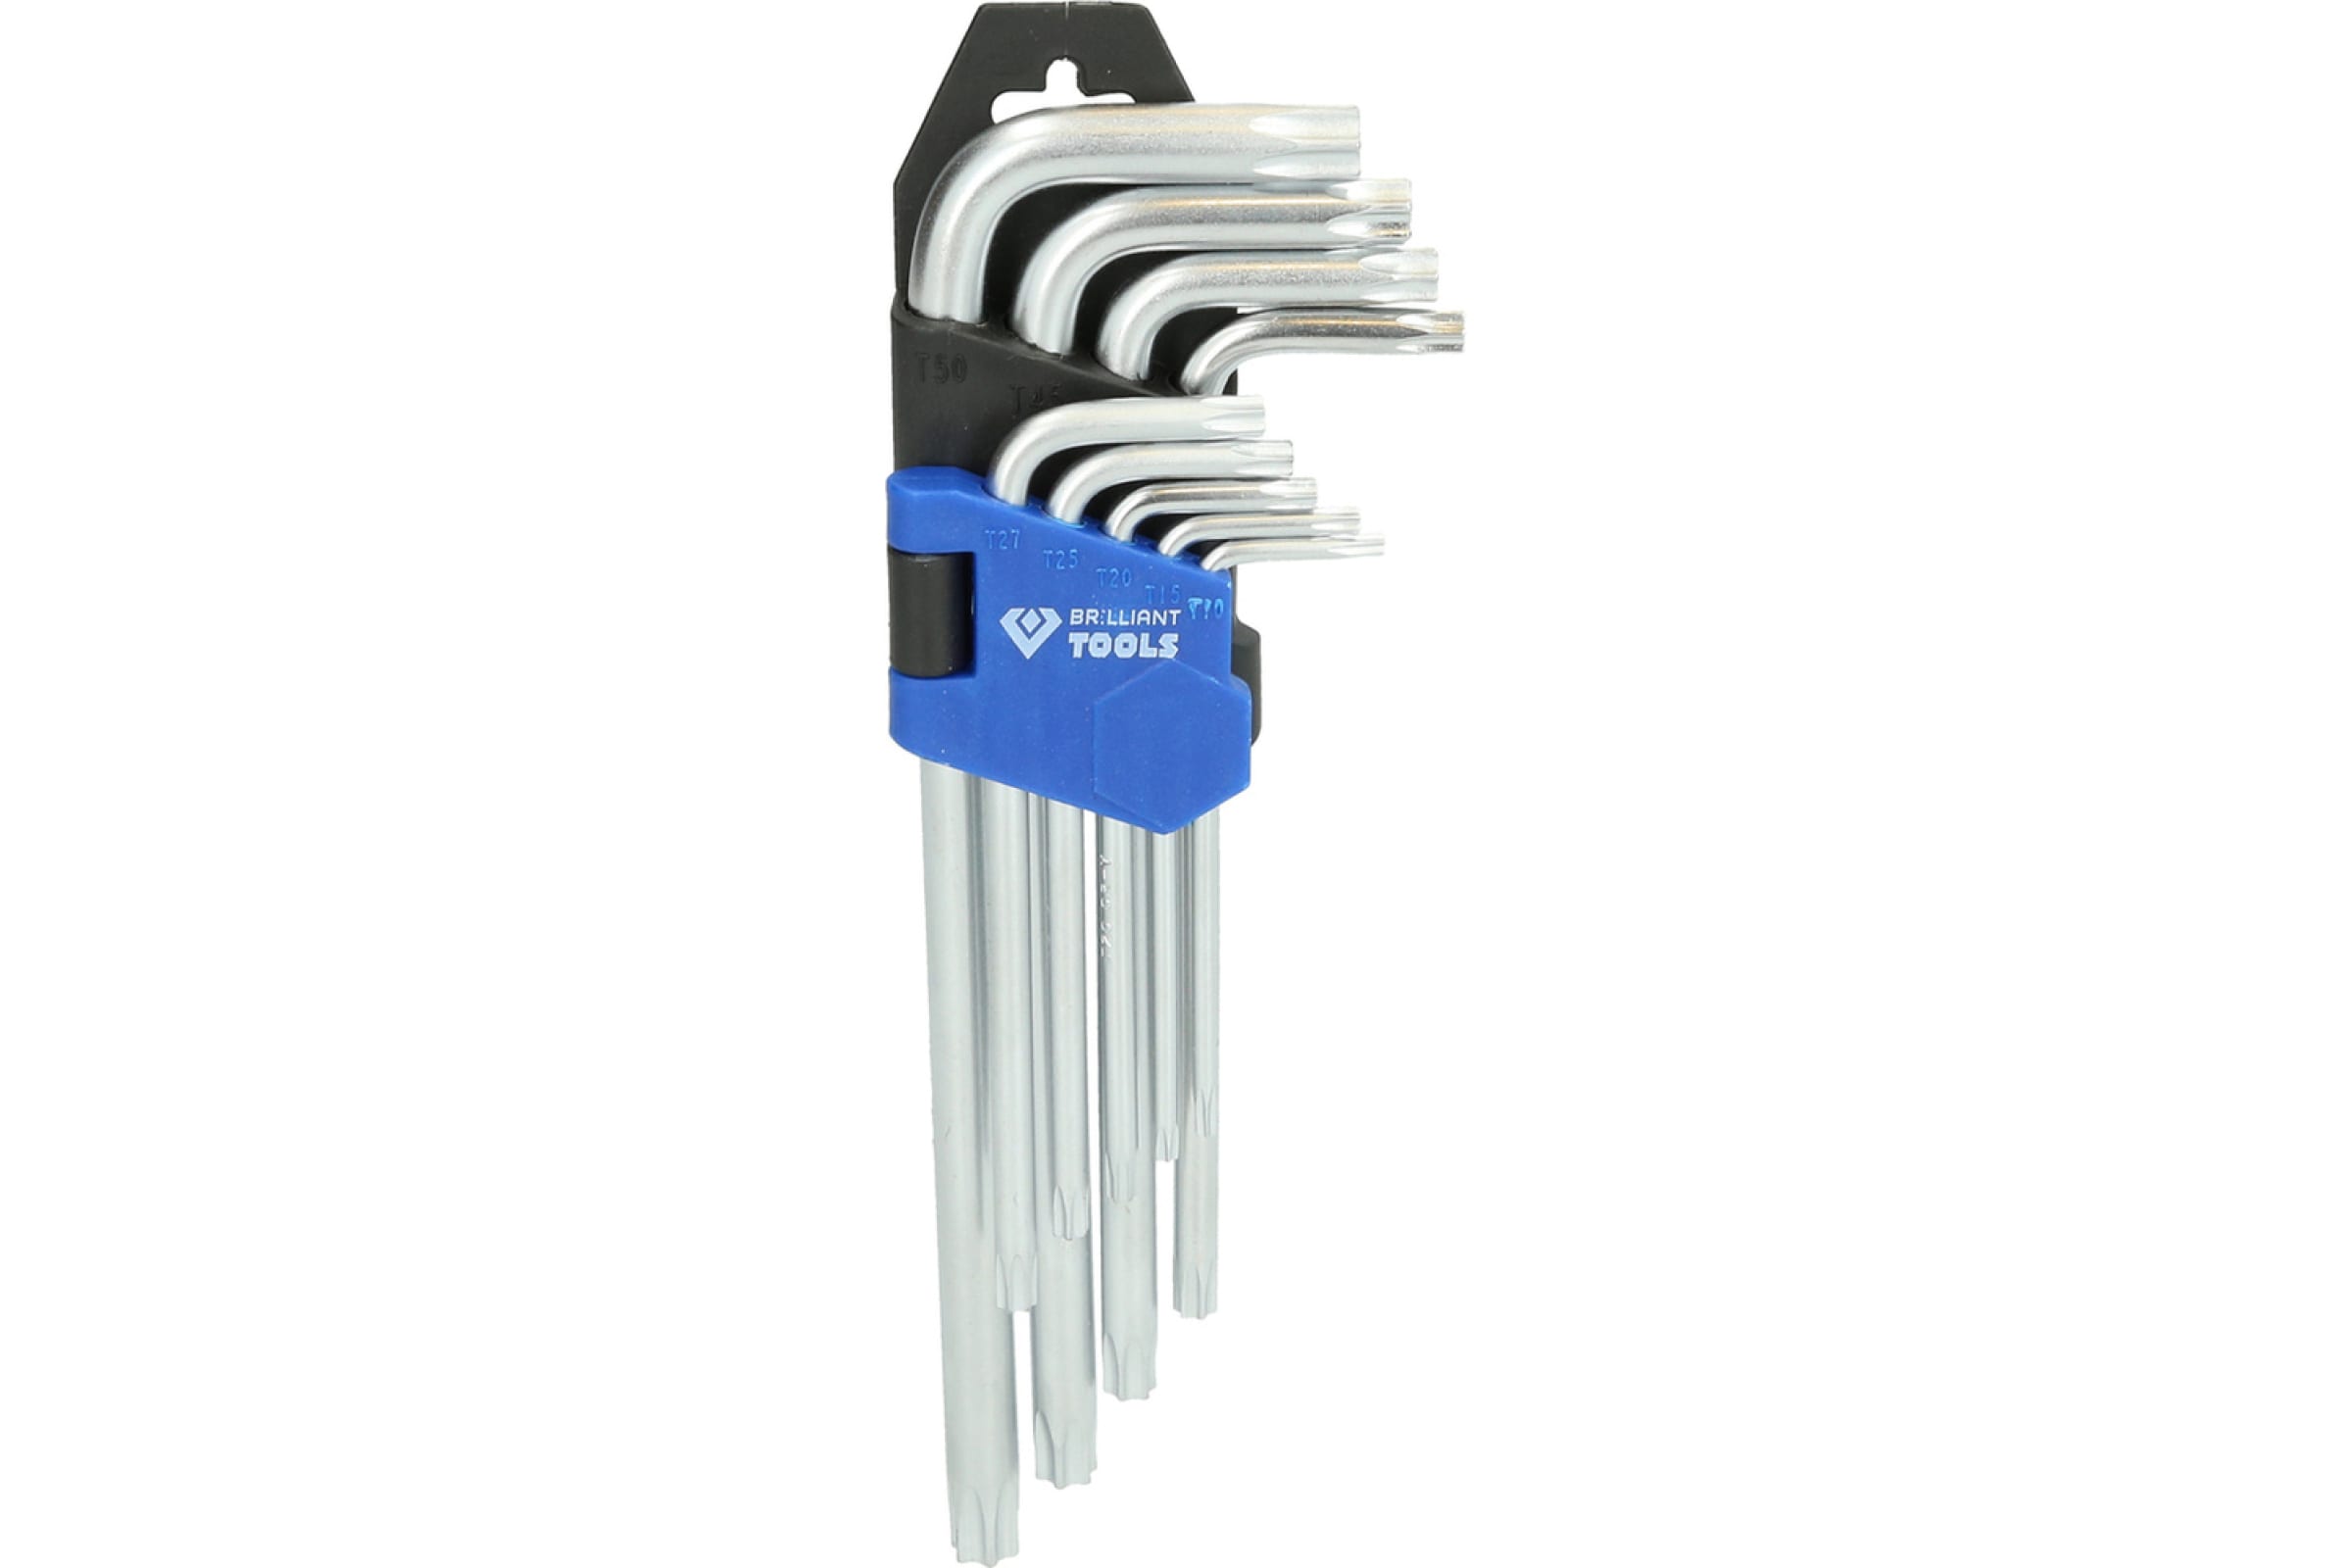 Brilliant Tools Набор угловых ключей Torx в откидном держателе 9 предметов BT044009